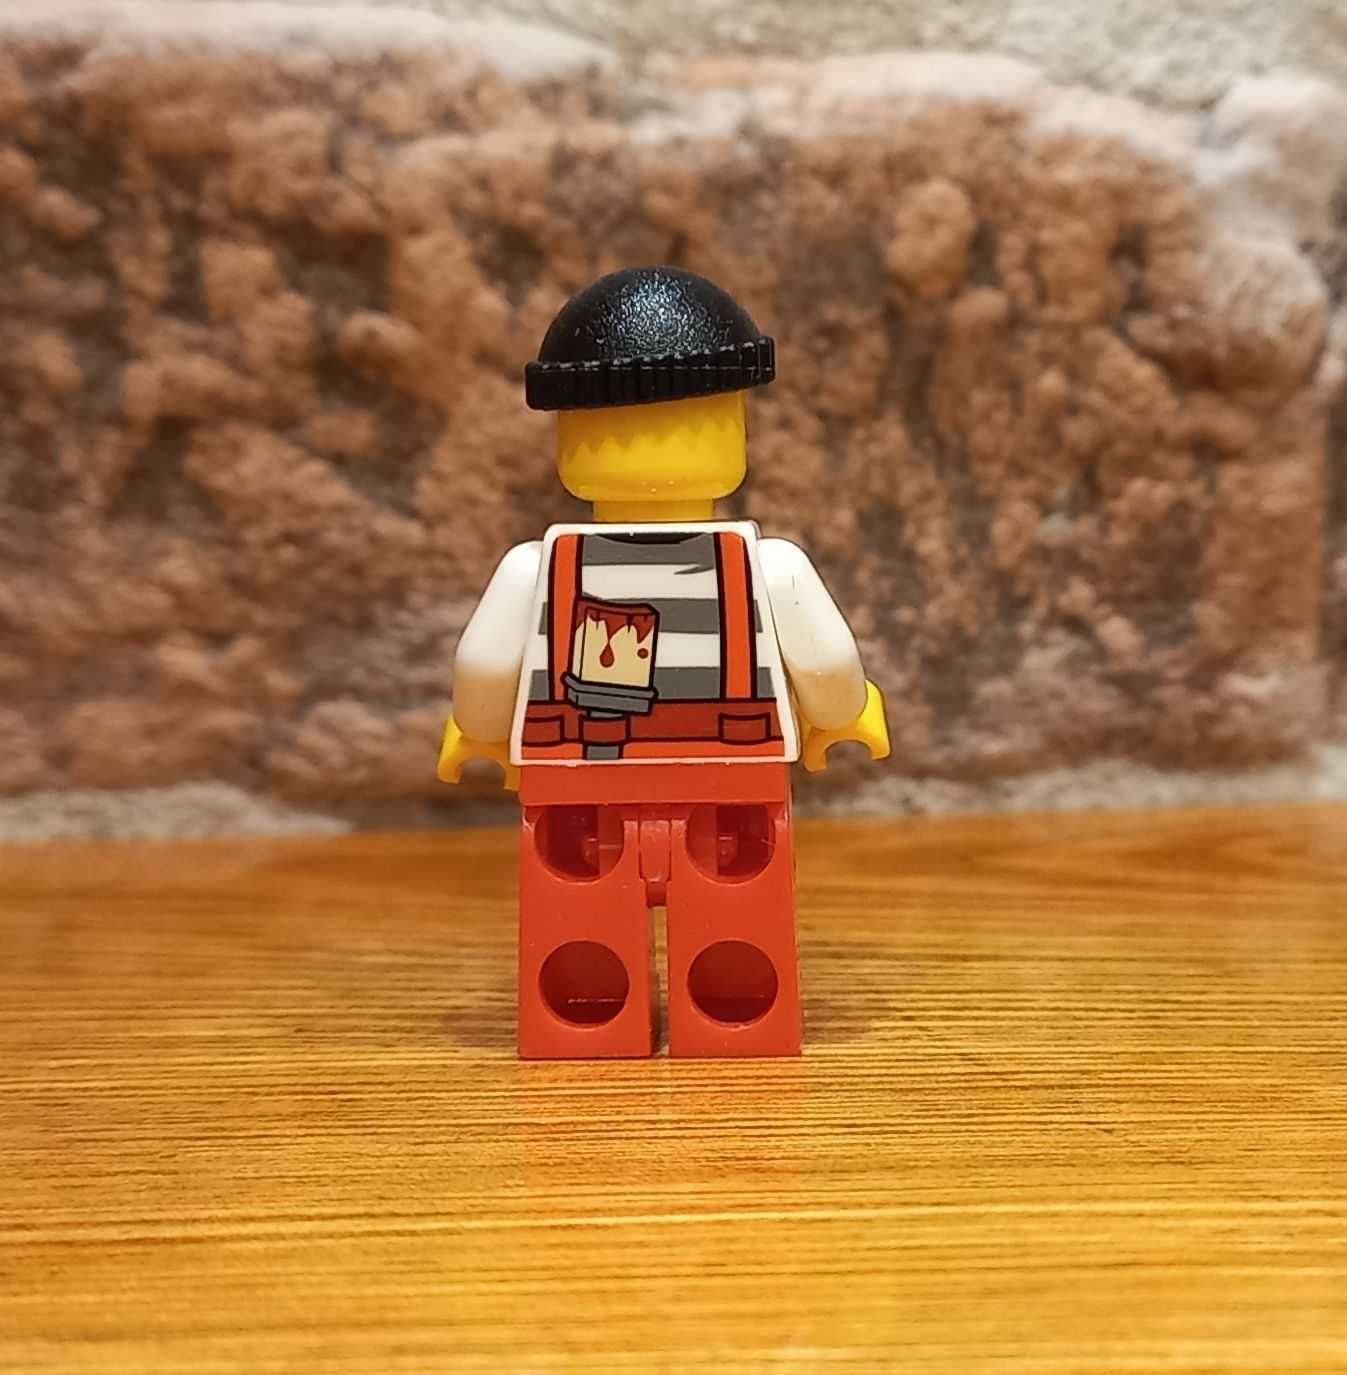 LEGO CITY - Minifigurka cty0709 - Miejski Bandyta